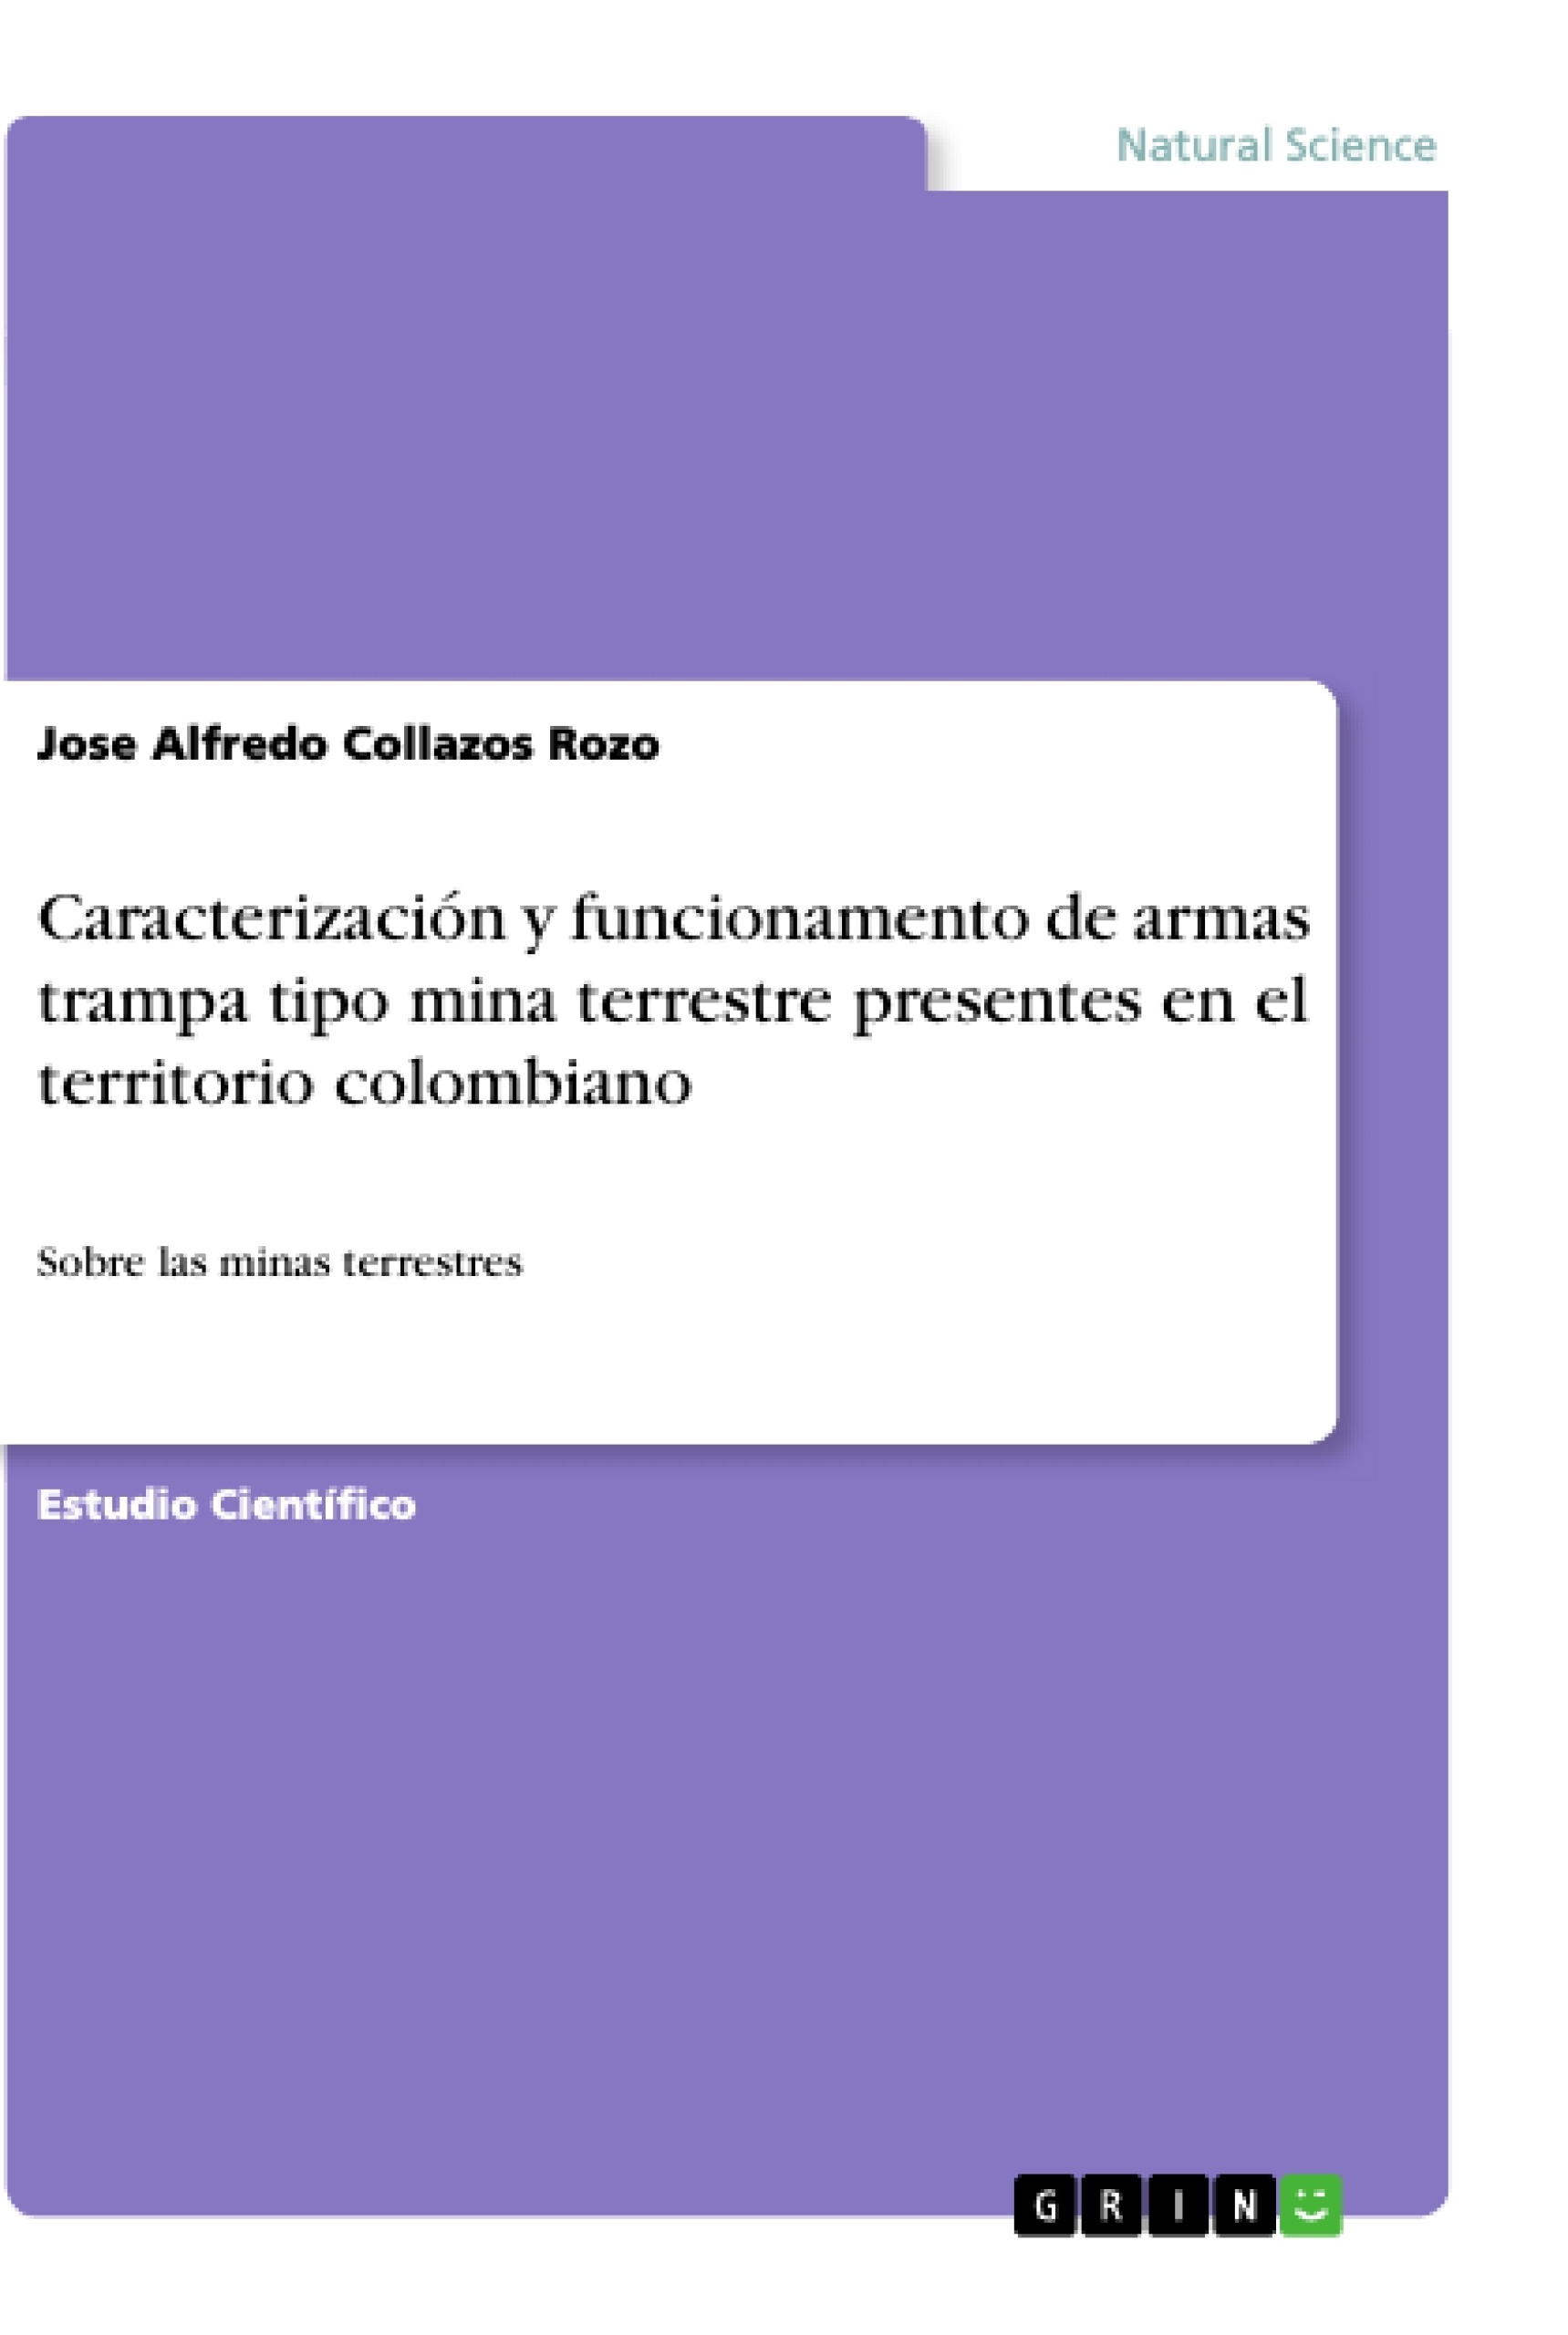 Titre: Caracterización y funcionamento de armas trampa tipo mina terrestre presentes en el territorio colombiano